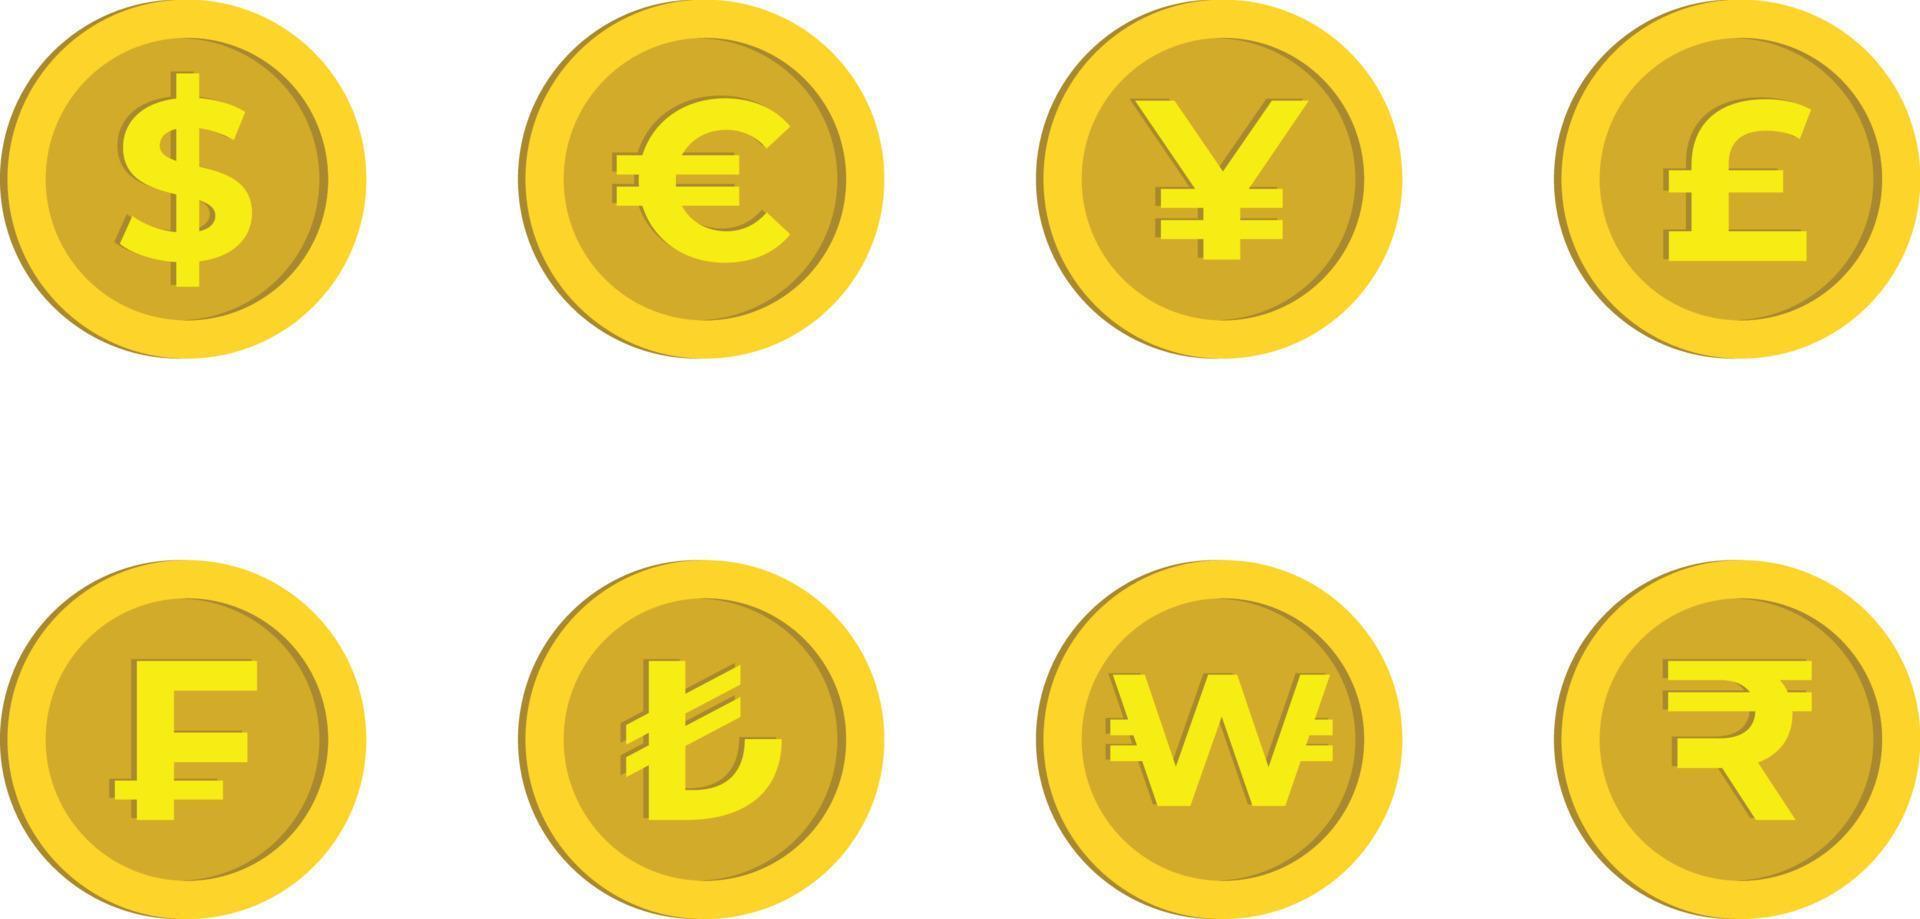 Dollar, Euro, Yen, Pfund, Franken, türkische Lira, Won und Rupienzeichen Goldkarikaturmünze, Geldwährung vektor